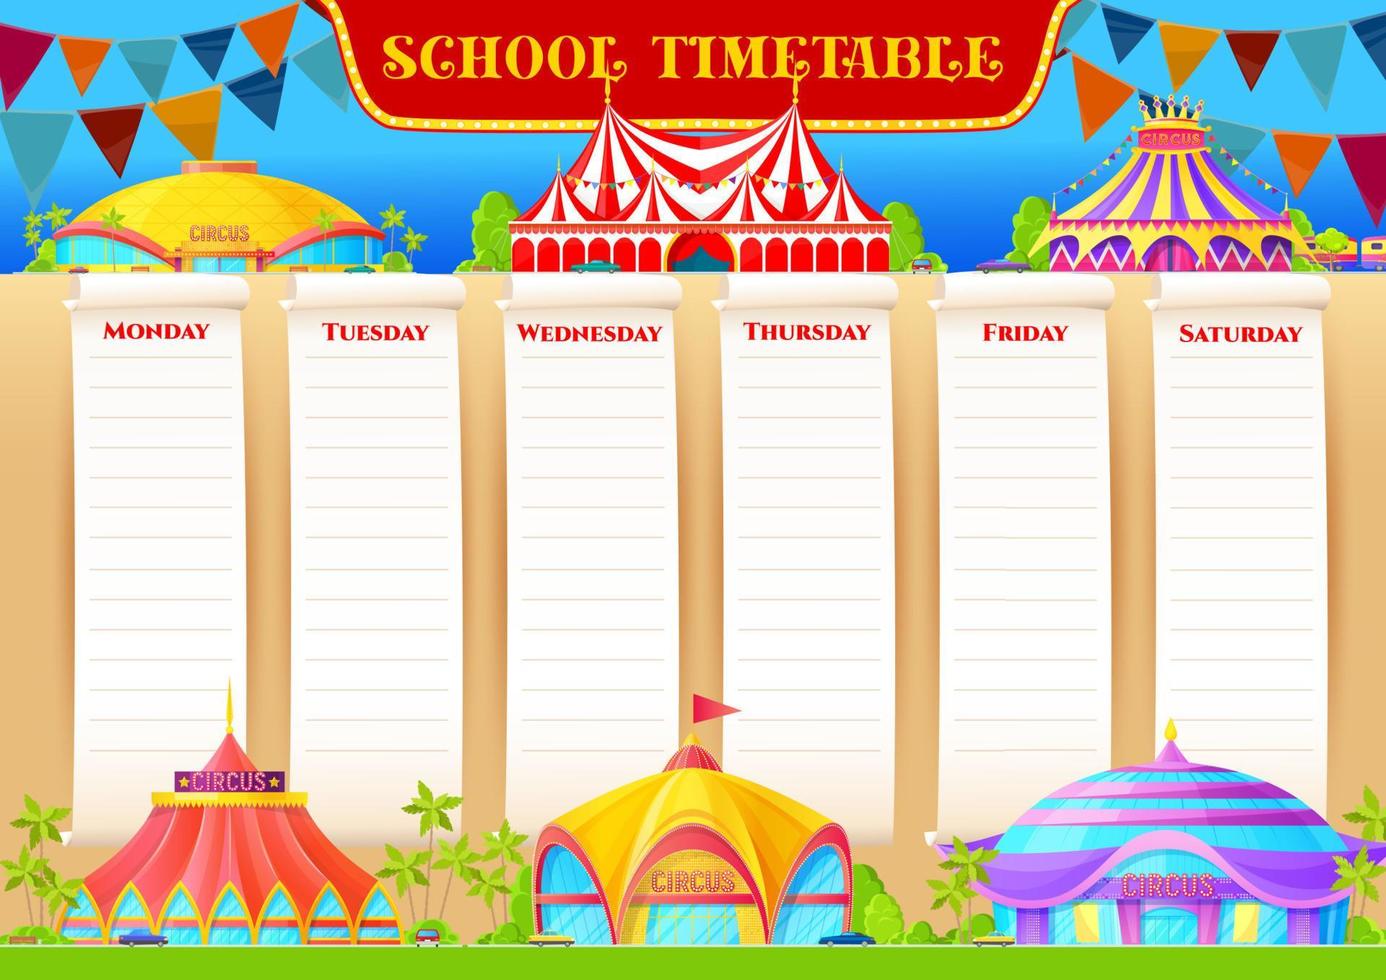 School timetable weekly planner, circus funfair vector